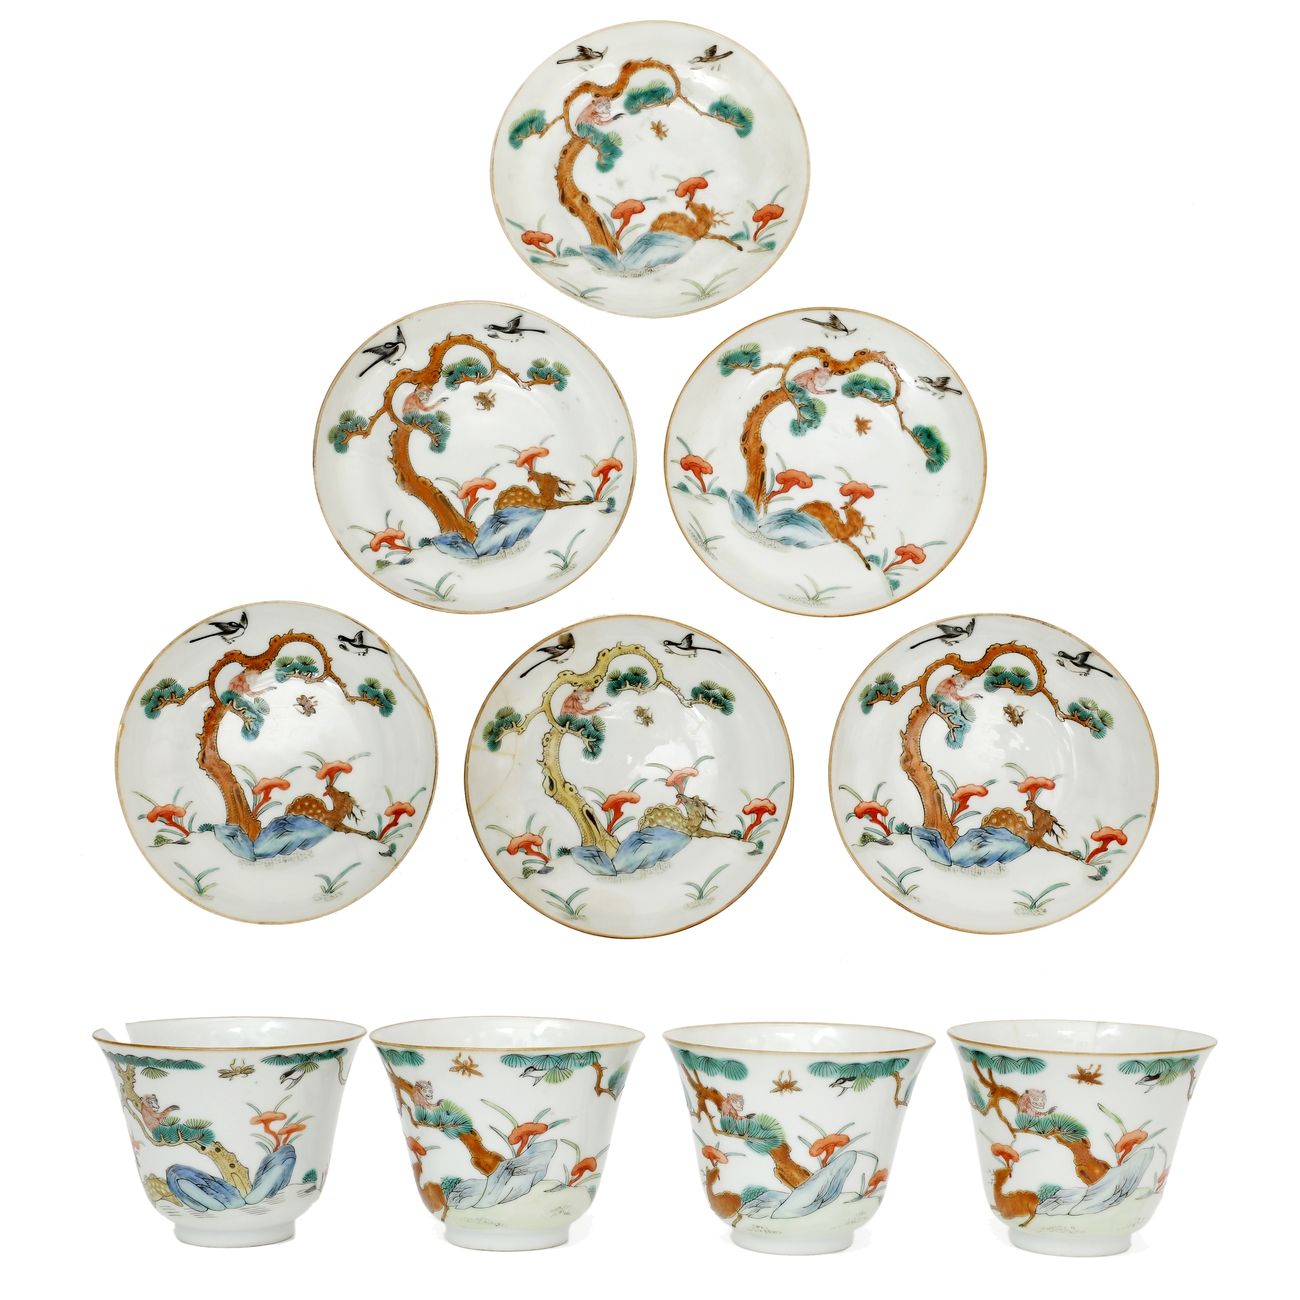 Null China circa 1900
Un set di quattro grandi ciotole in porcellana e sei piatt&hellip;